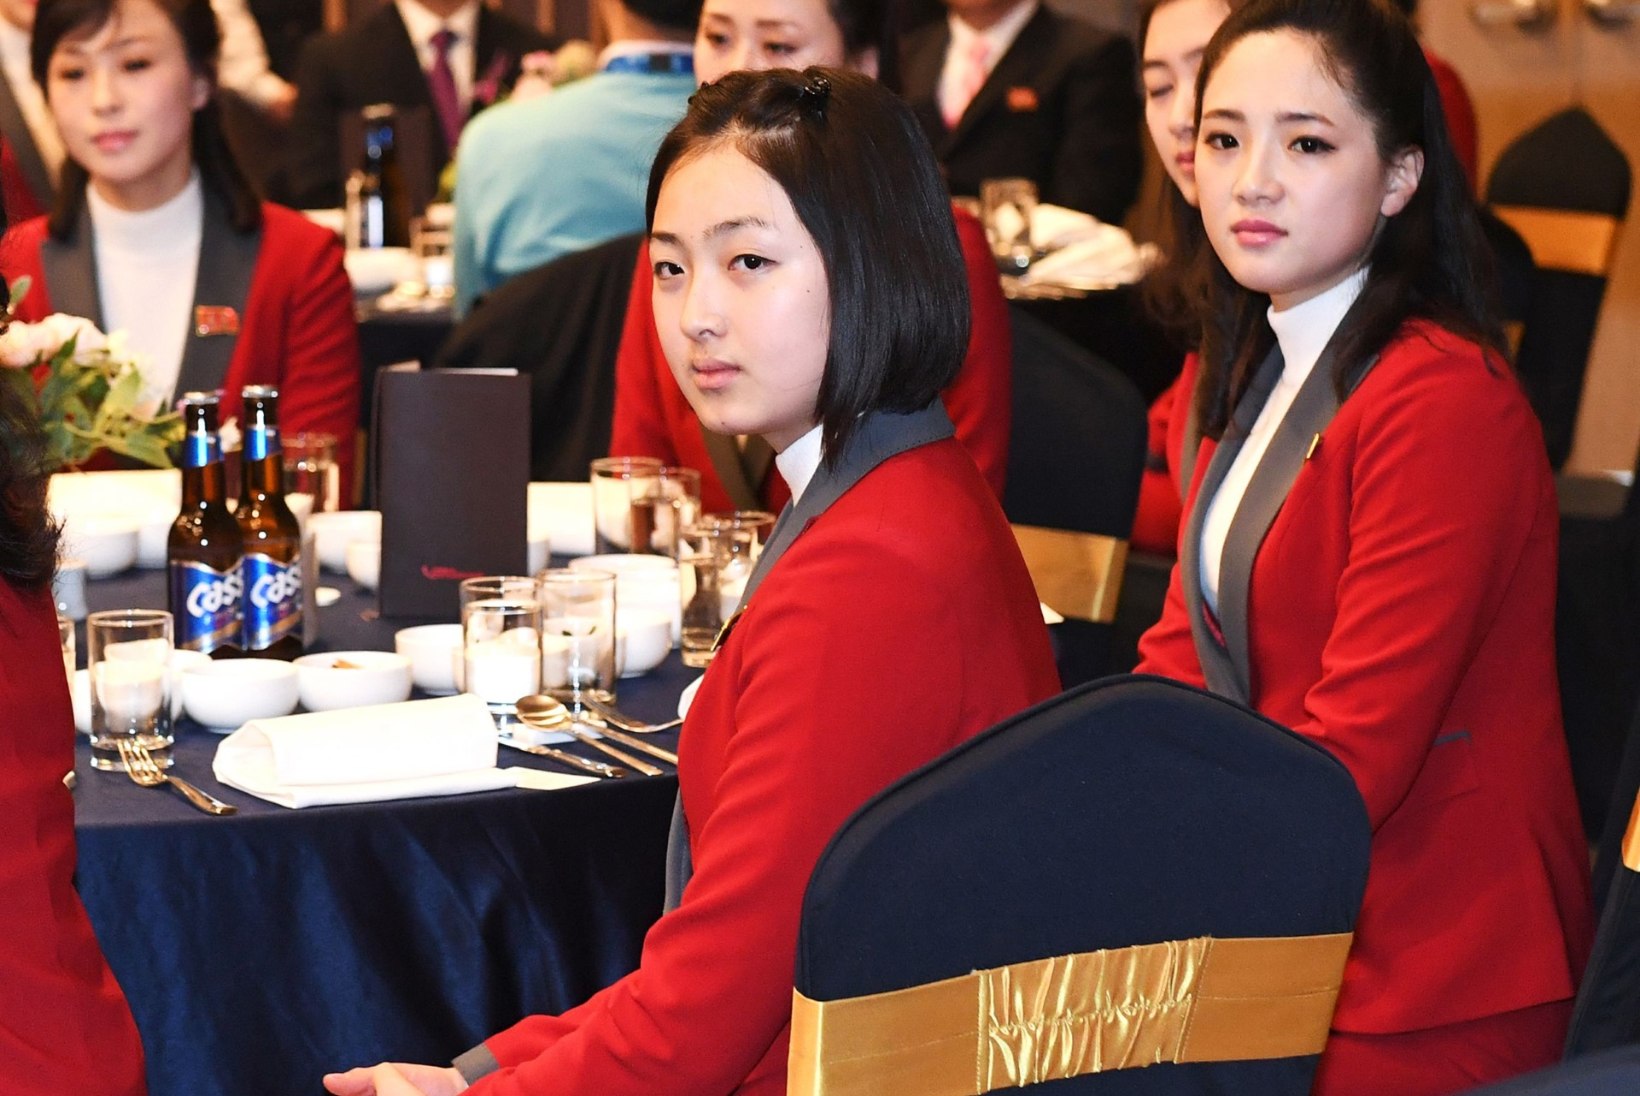 GALERII | Põhja-Korea saadab olümpiale sadu kauneid ergutustüdrukuid